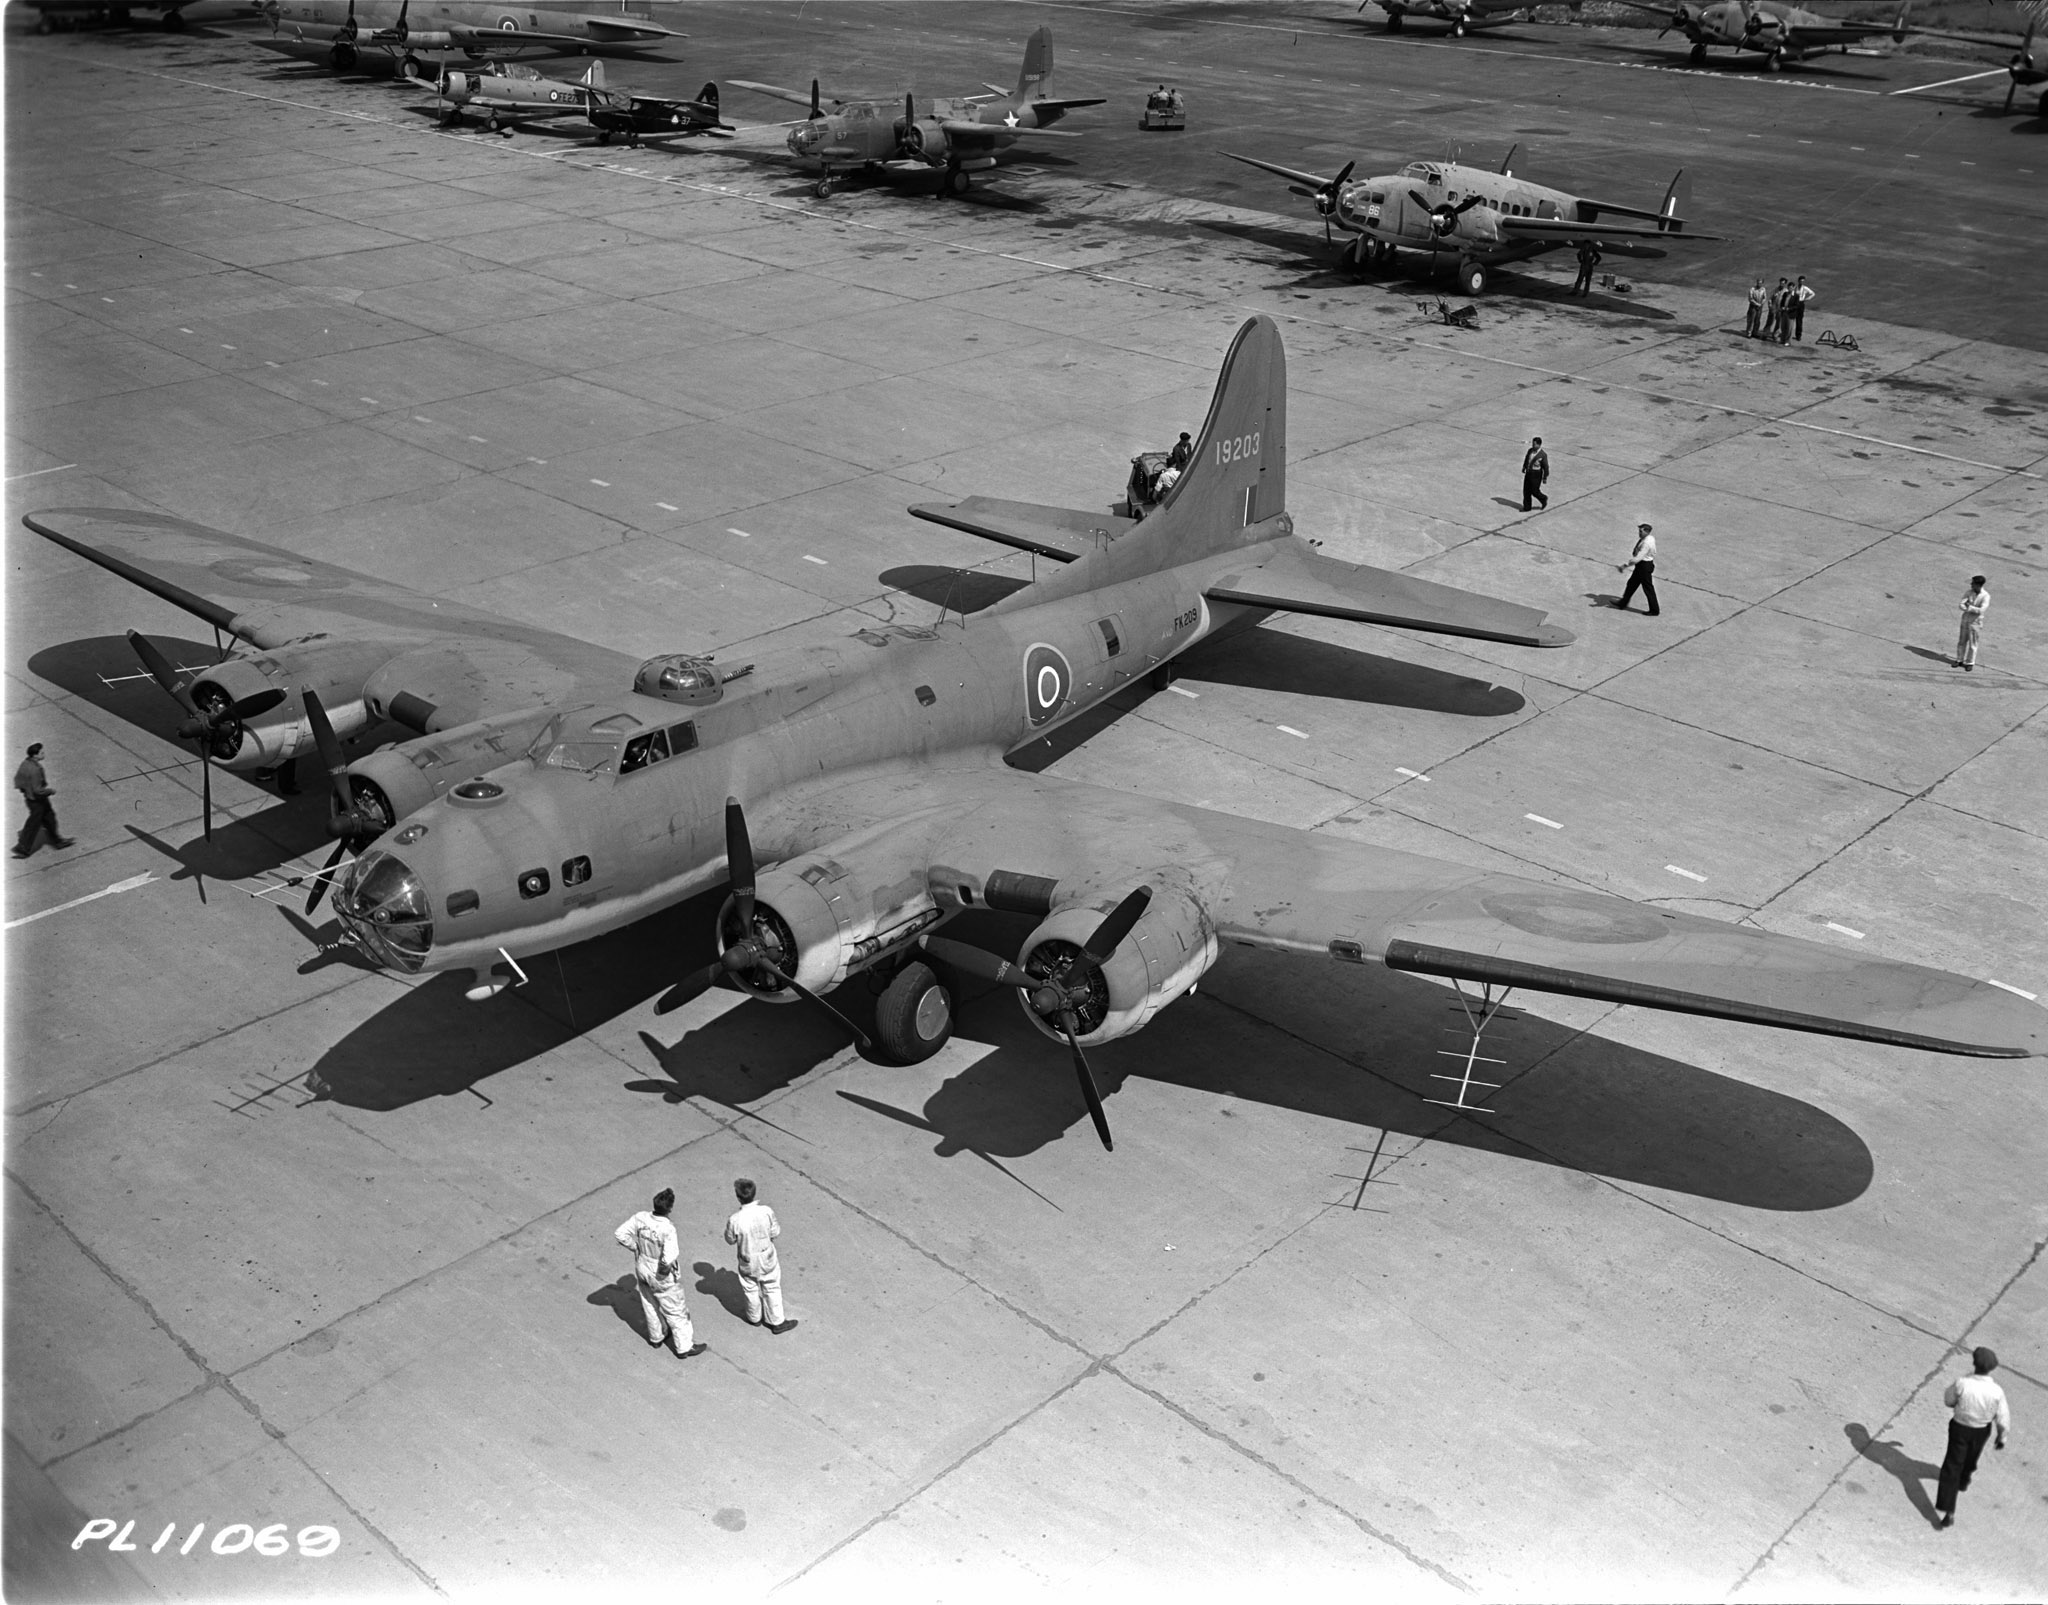 Un Boeing B-17 Flying Fortress à l’aéroport de Dorval, au Québec. PHOTO : Archives du MDN, PL-11069